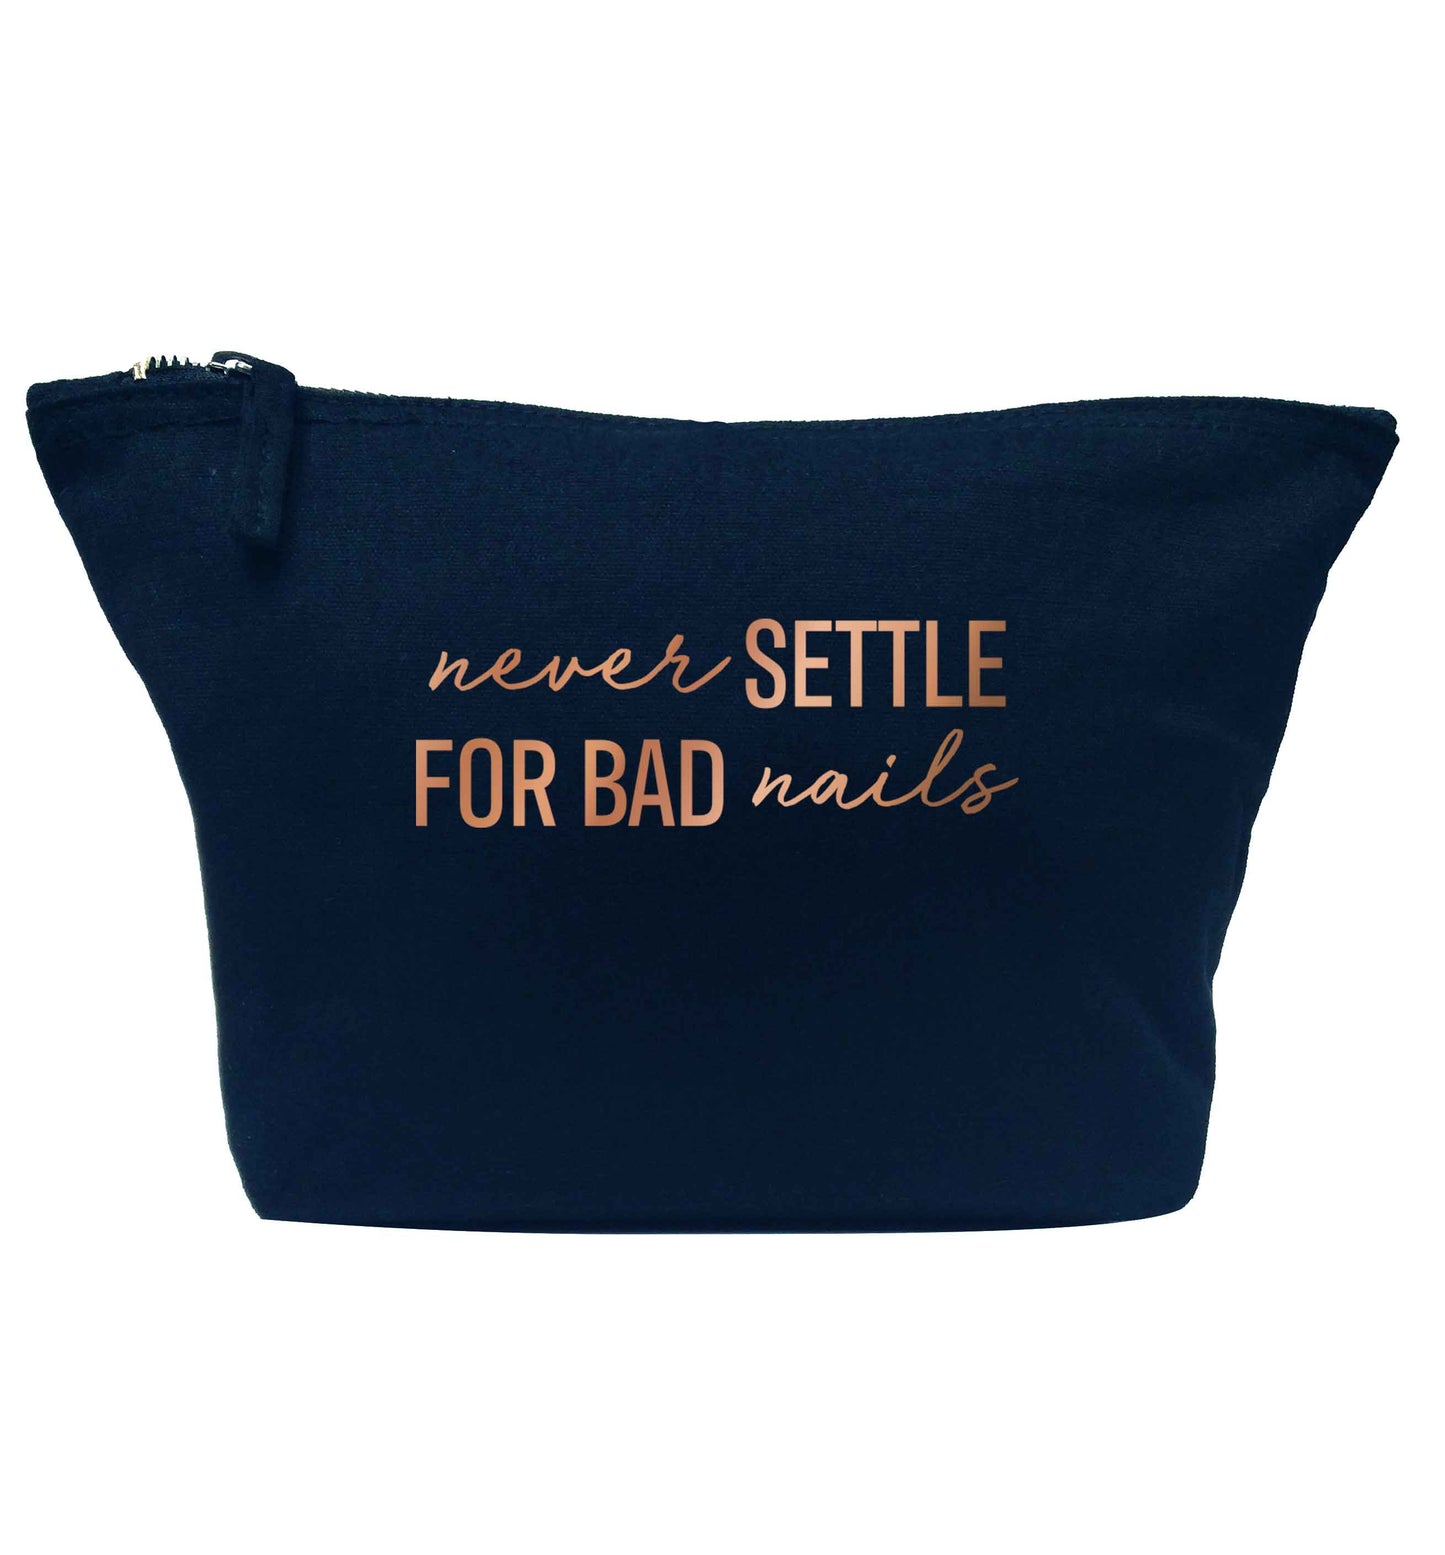 Never settle for bad nails - rose gold navy makeup bag